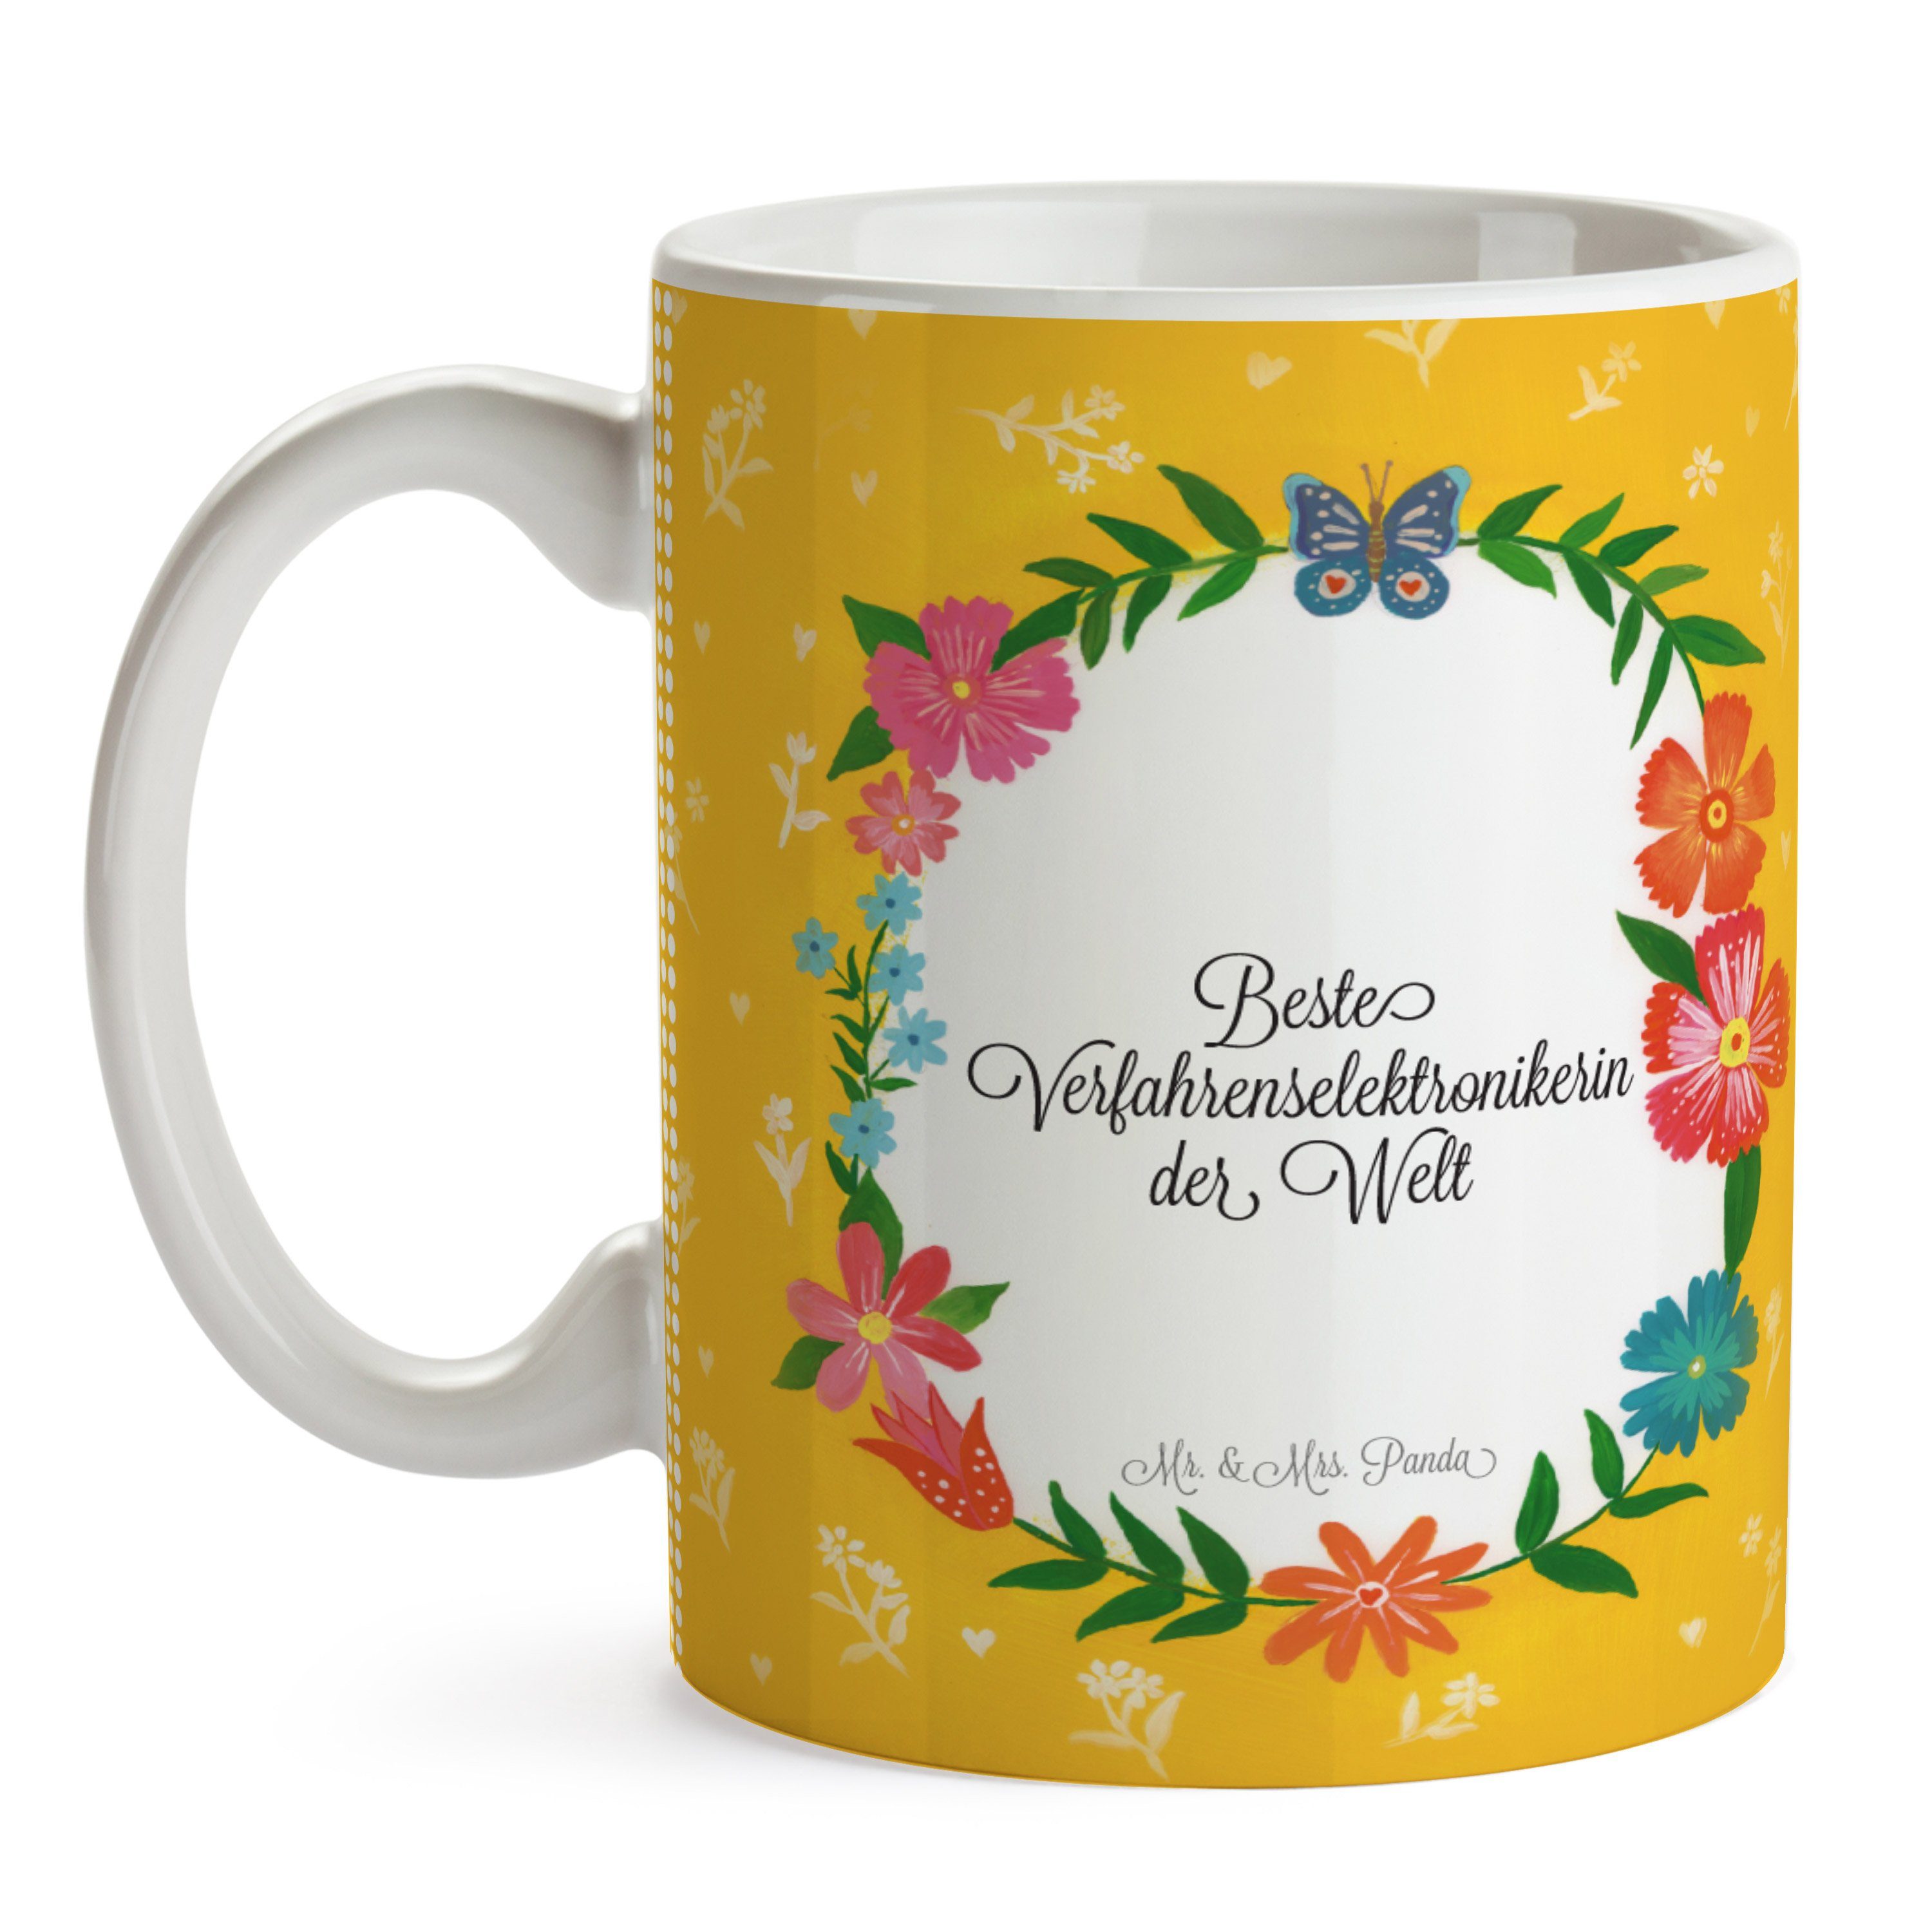 Mr. & Mrs. Gratulation, Geschenk, Verfahrenselektronikerin Keramik - Ausbi, Kaffeebecher, Panda Tasse